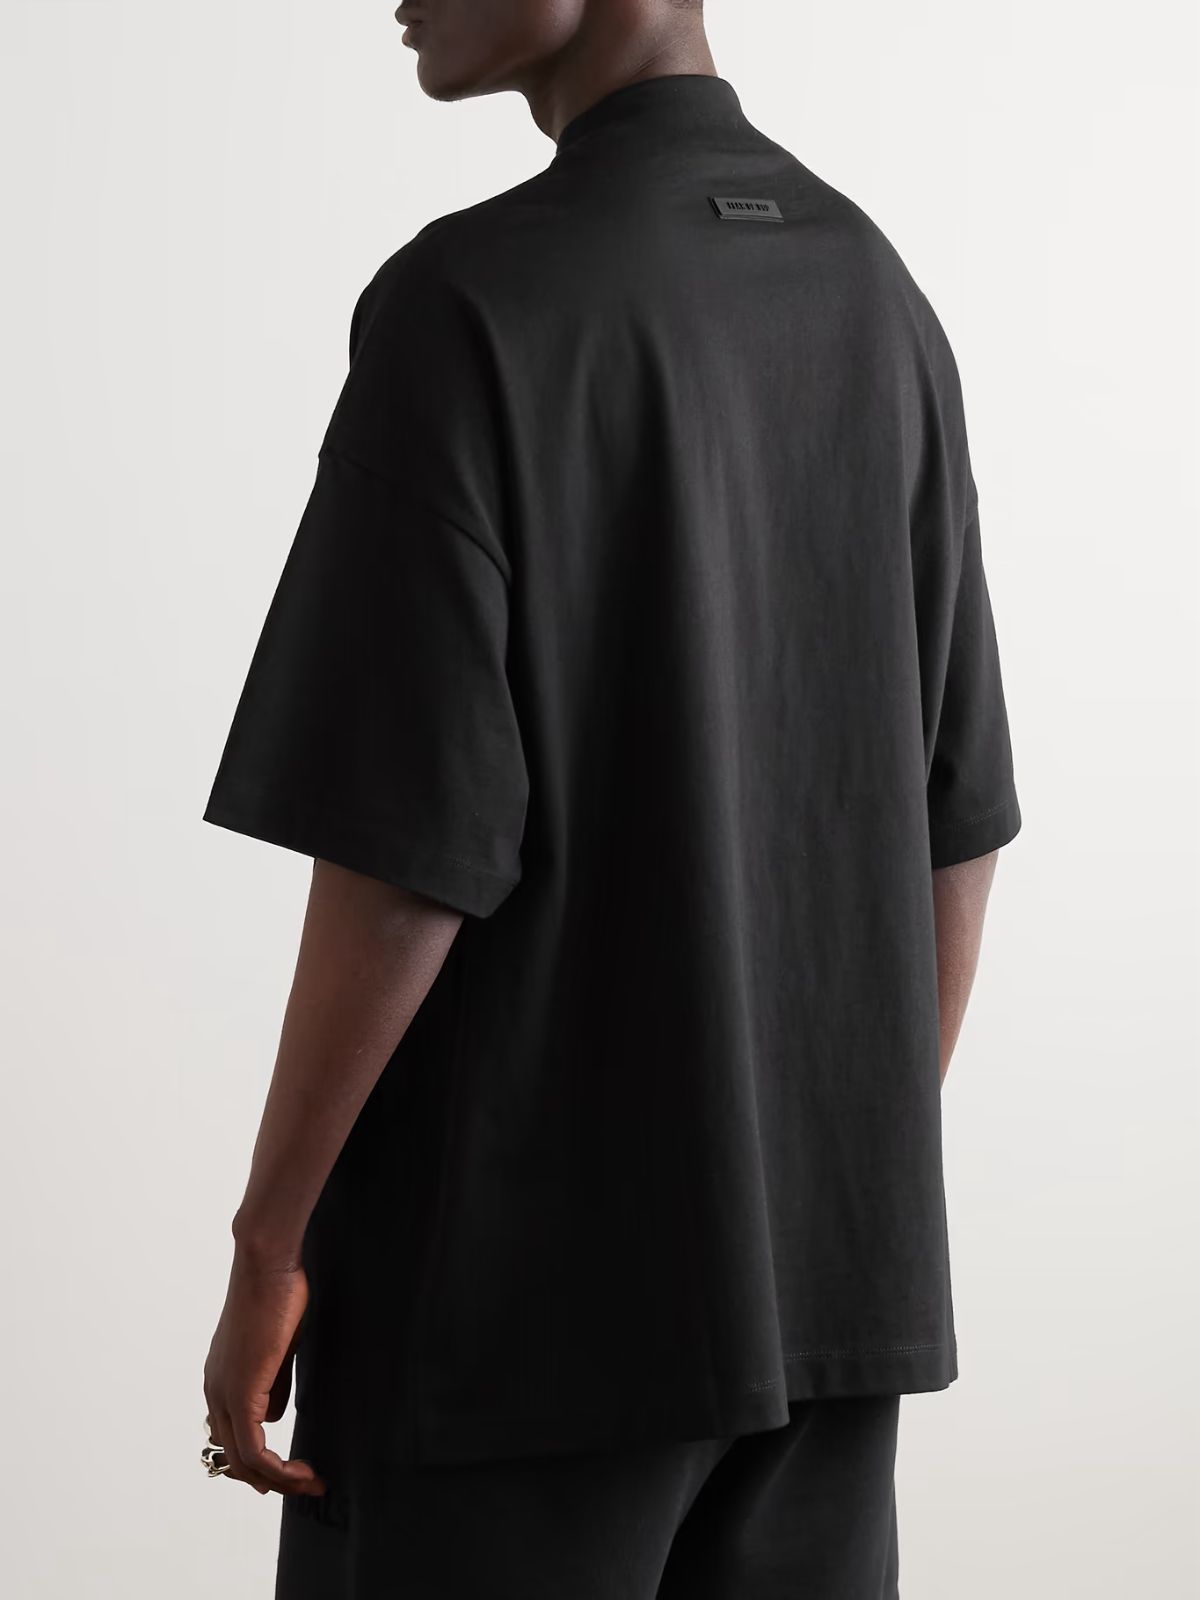 ESSENTIALS ブラック ボンディングロゴ Tシャツ